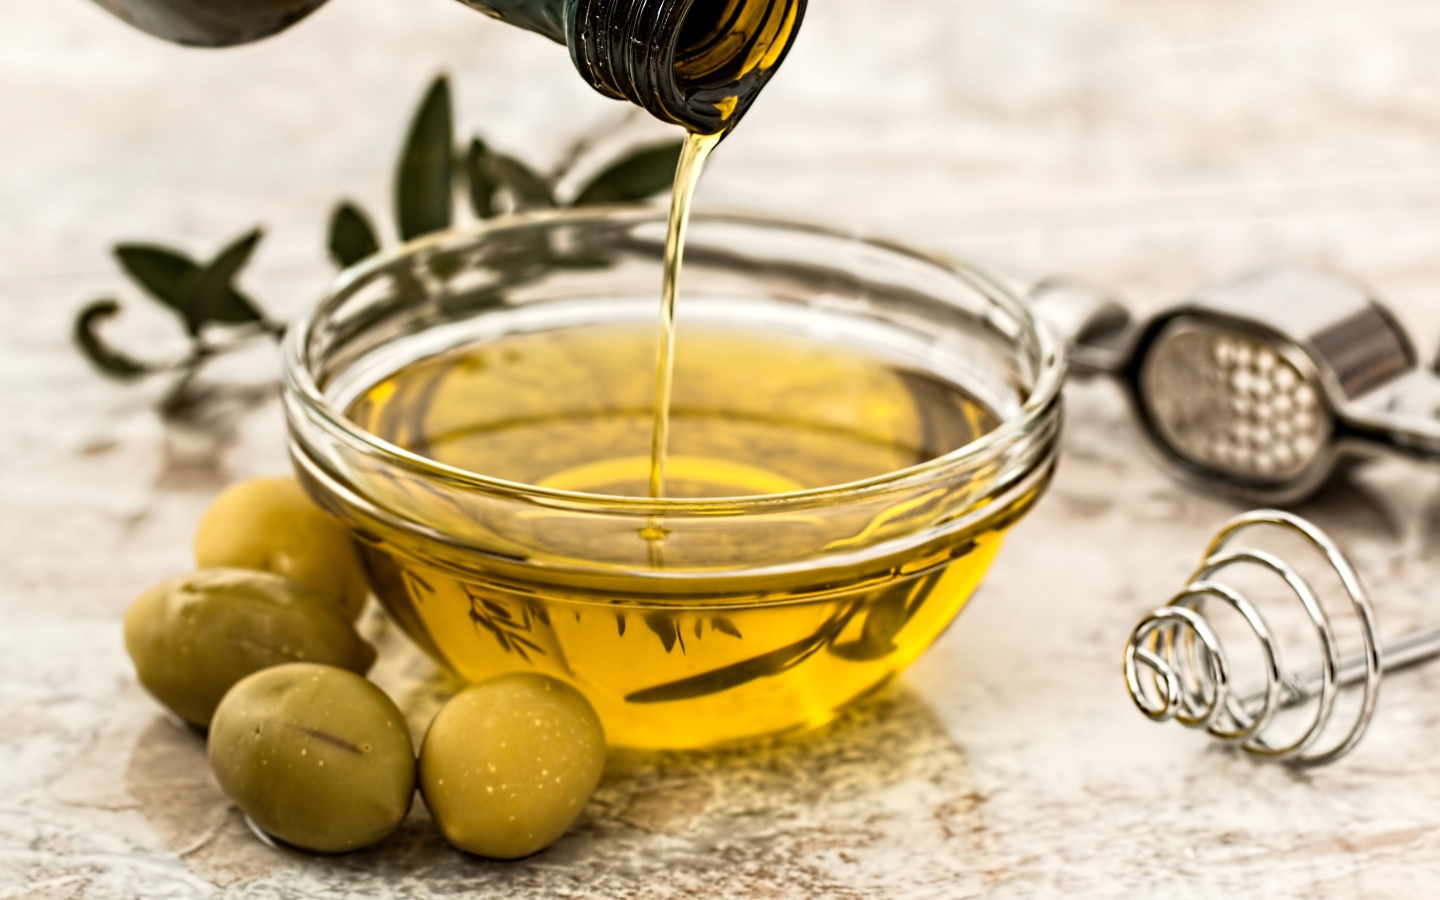 Оливковое масло в стеклянной посуде на столе с зелеными оливками